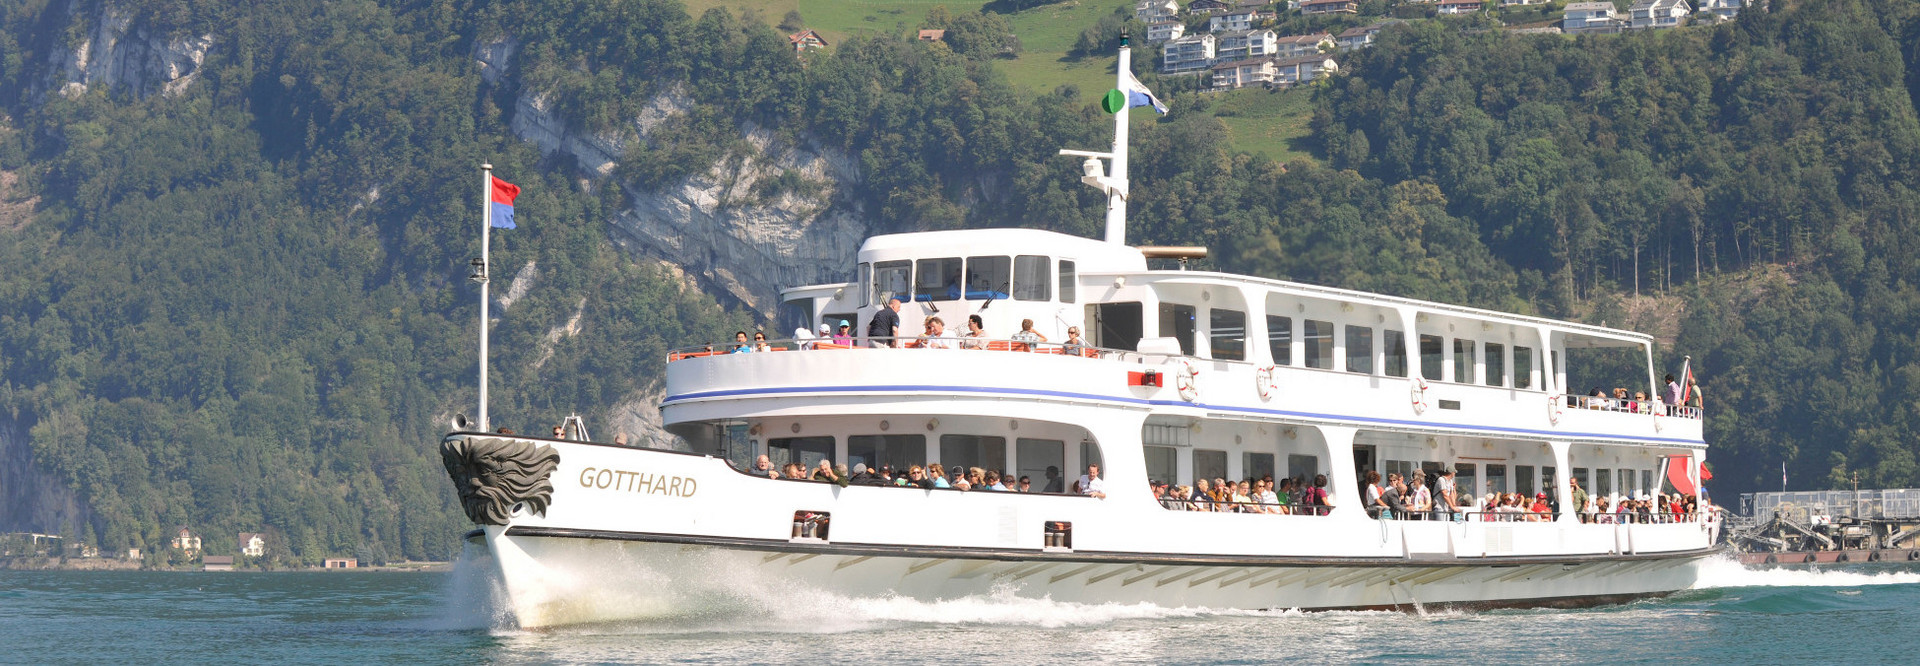 Le bateau à moteur Gotthard navigue sur le lac des Quatre-Cantons par une belle journée d'été.